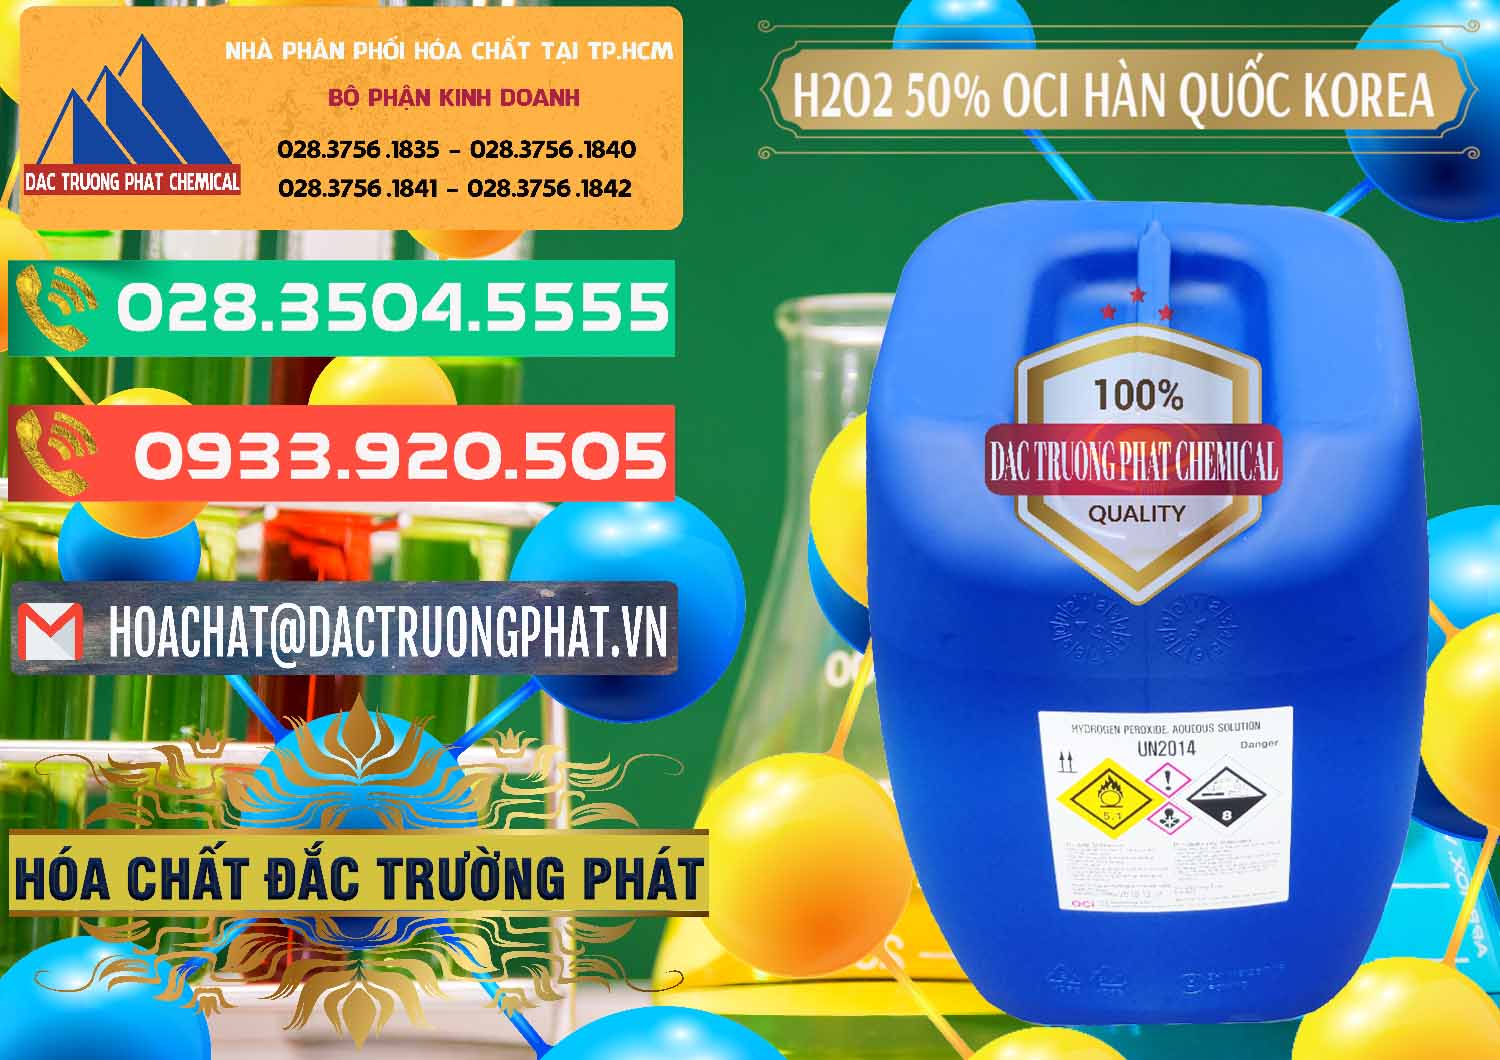 Bán - phân phối H2O2 - Hydrogen Peroxide 50% OCI Hàn Quốc Korea - 0075 - Đơn vị chuyên cung cấp - nhập khẩu hóa chất tại TP.HCM - congtyhoachat.com.vn